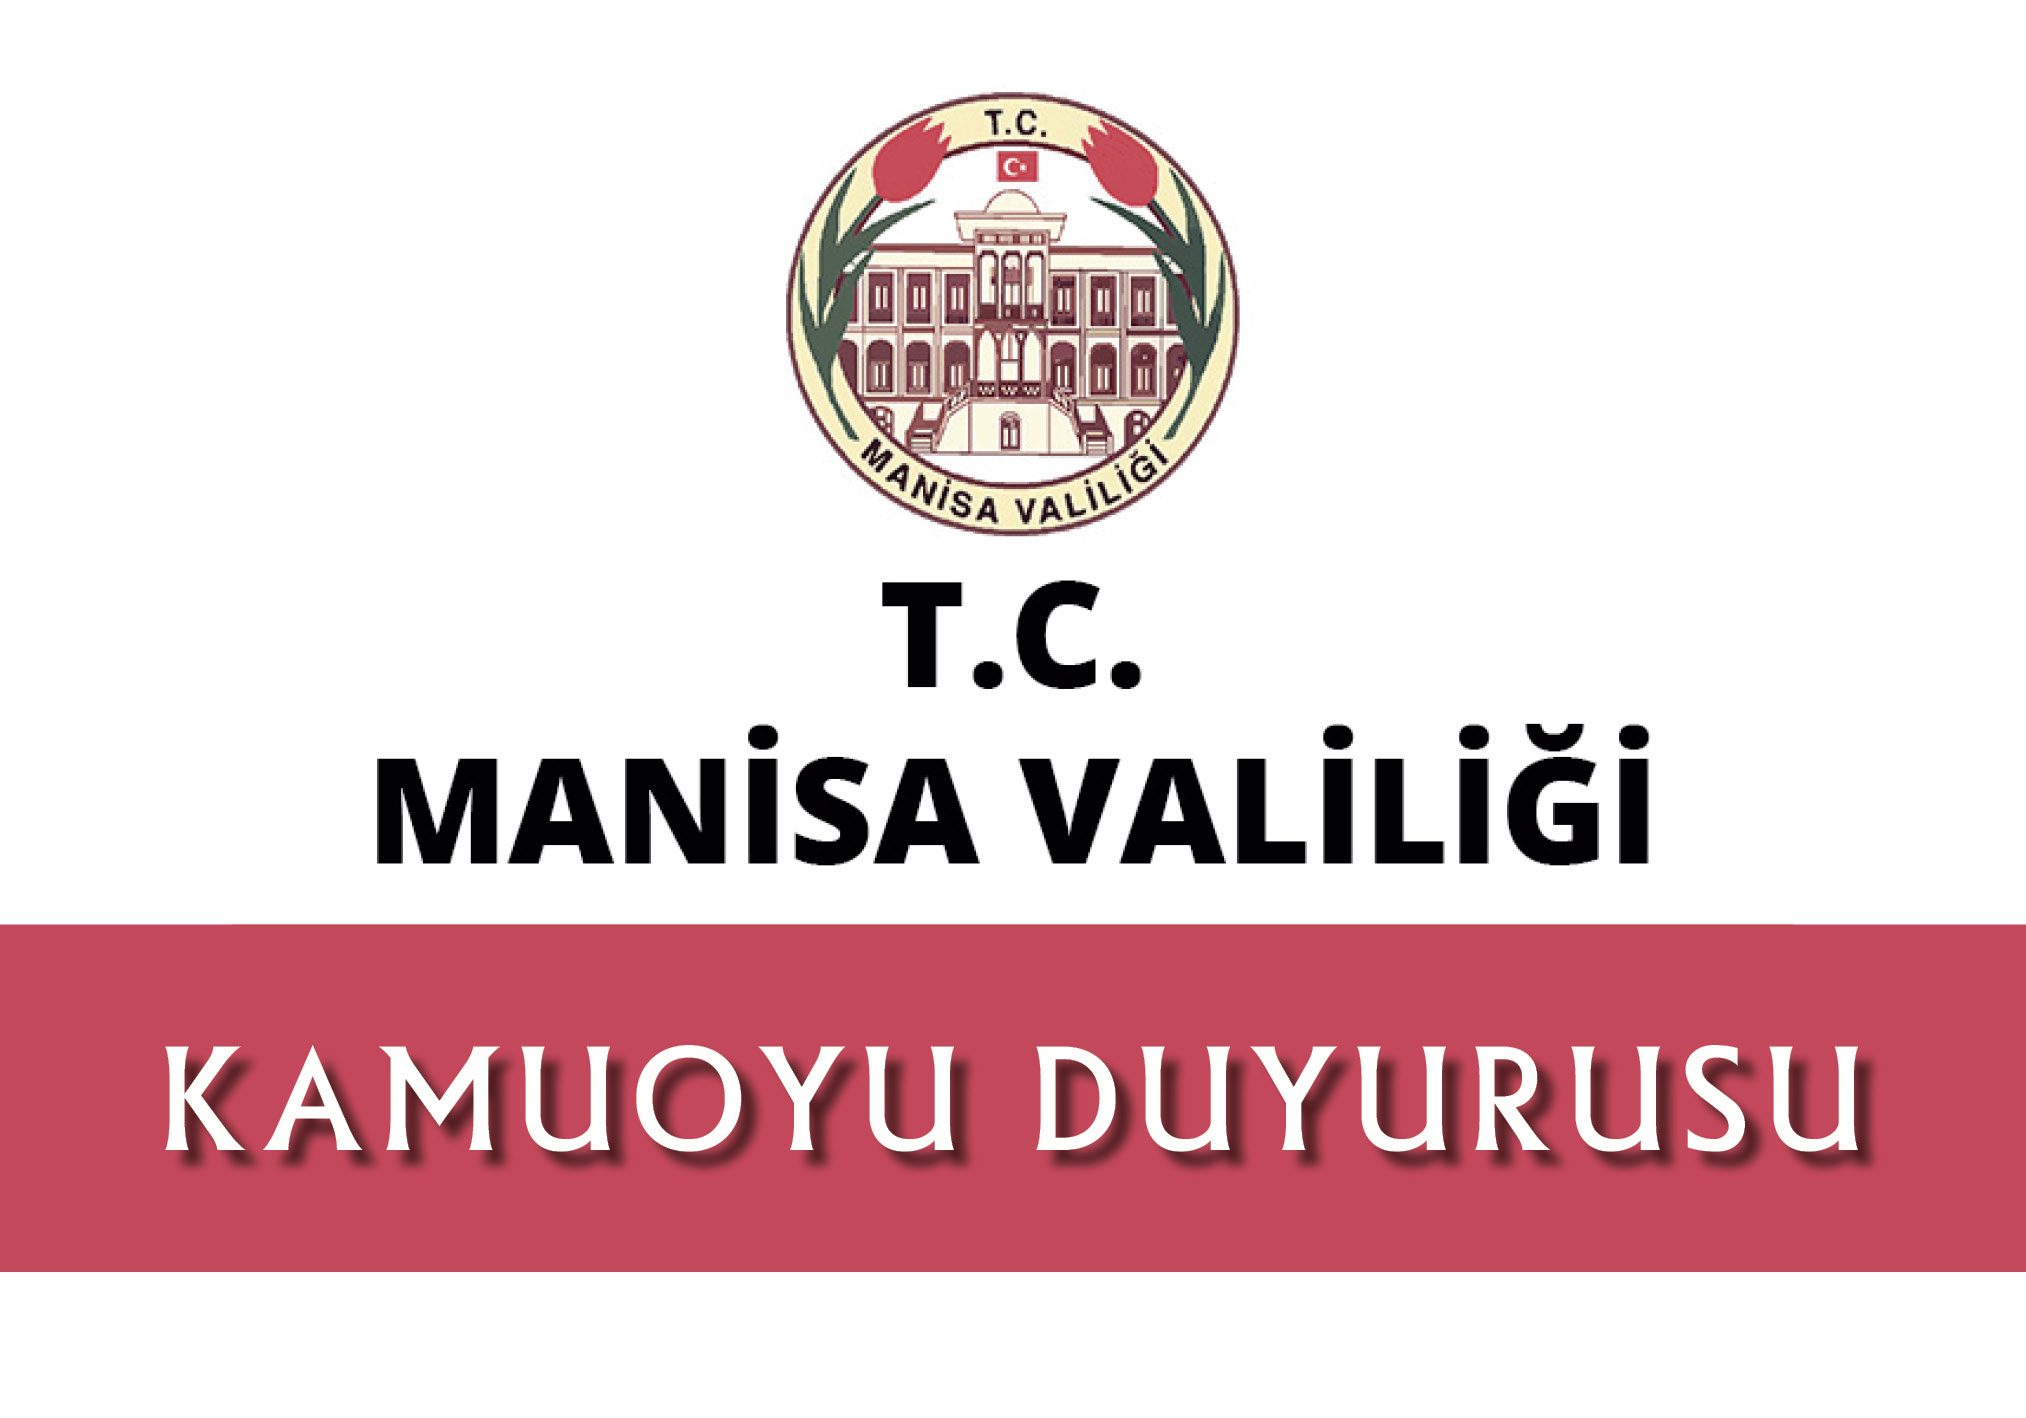 T.C.MANSA VALL'nden KAMUOYU DUYURUSU